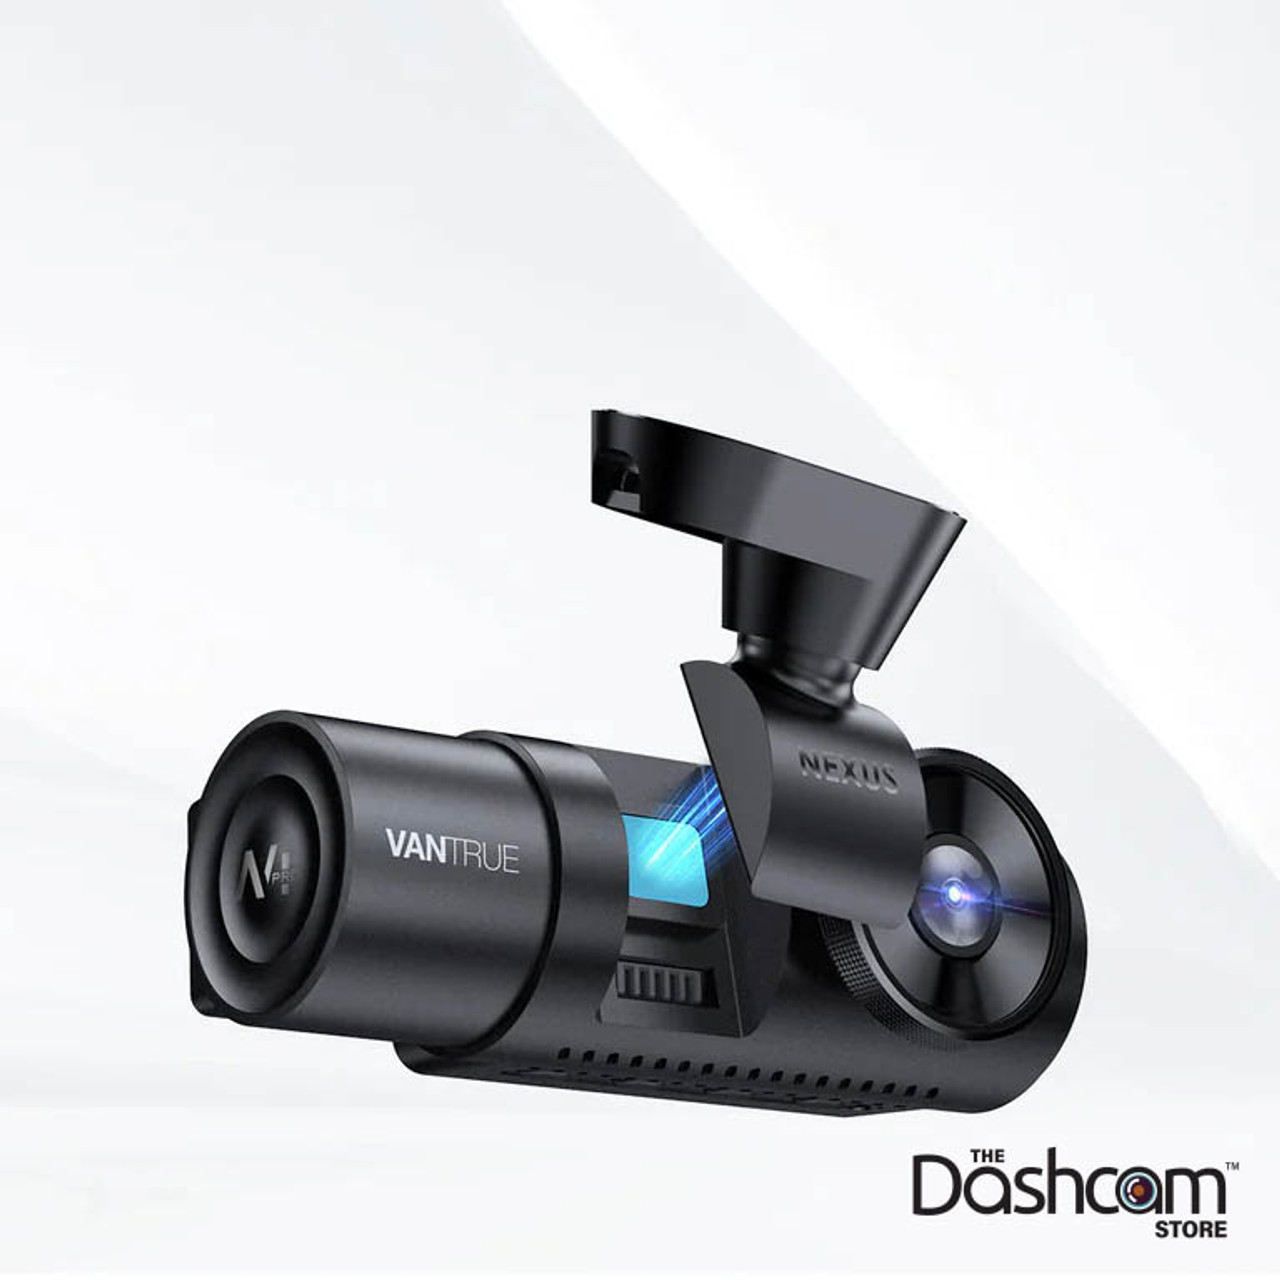 Three months with the Vantrue N4 Pro 4K 3-channel dash cam